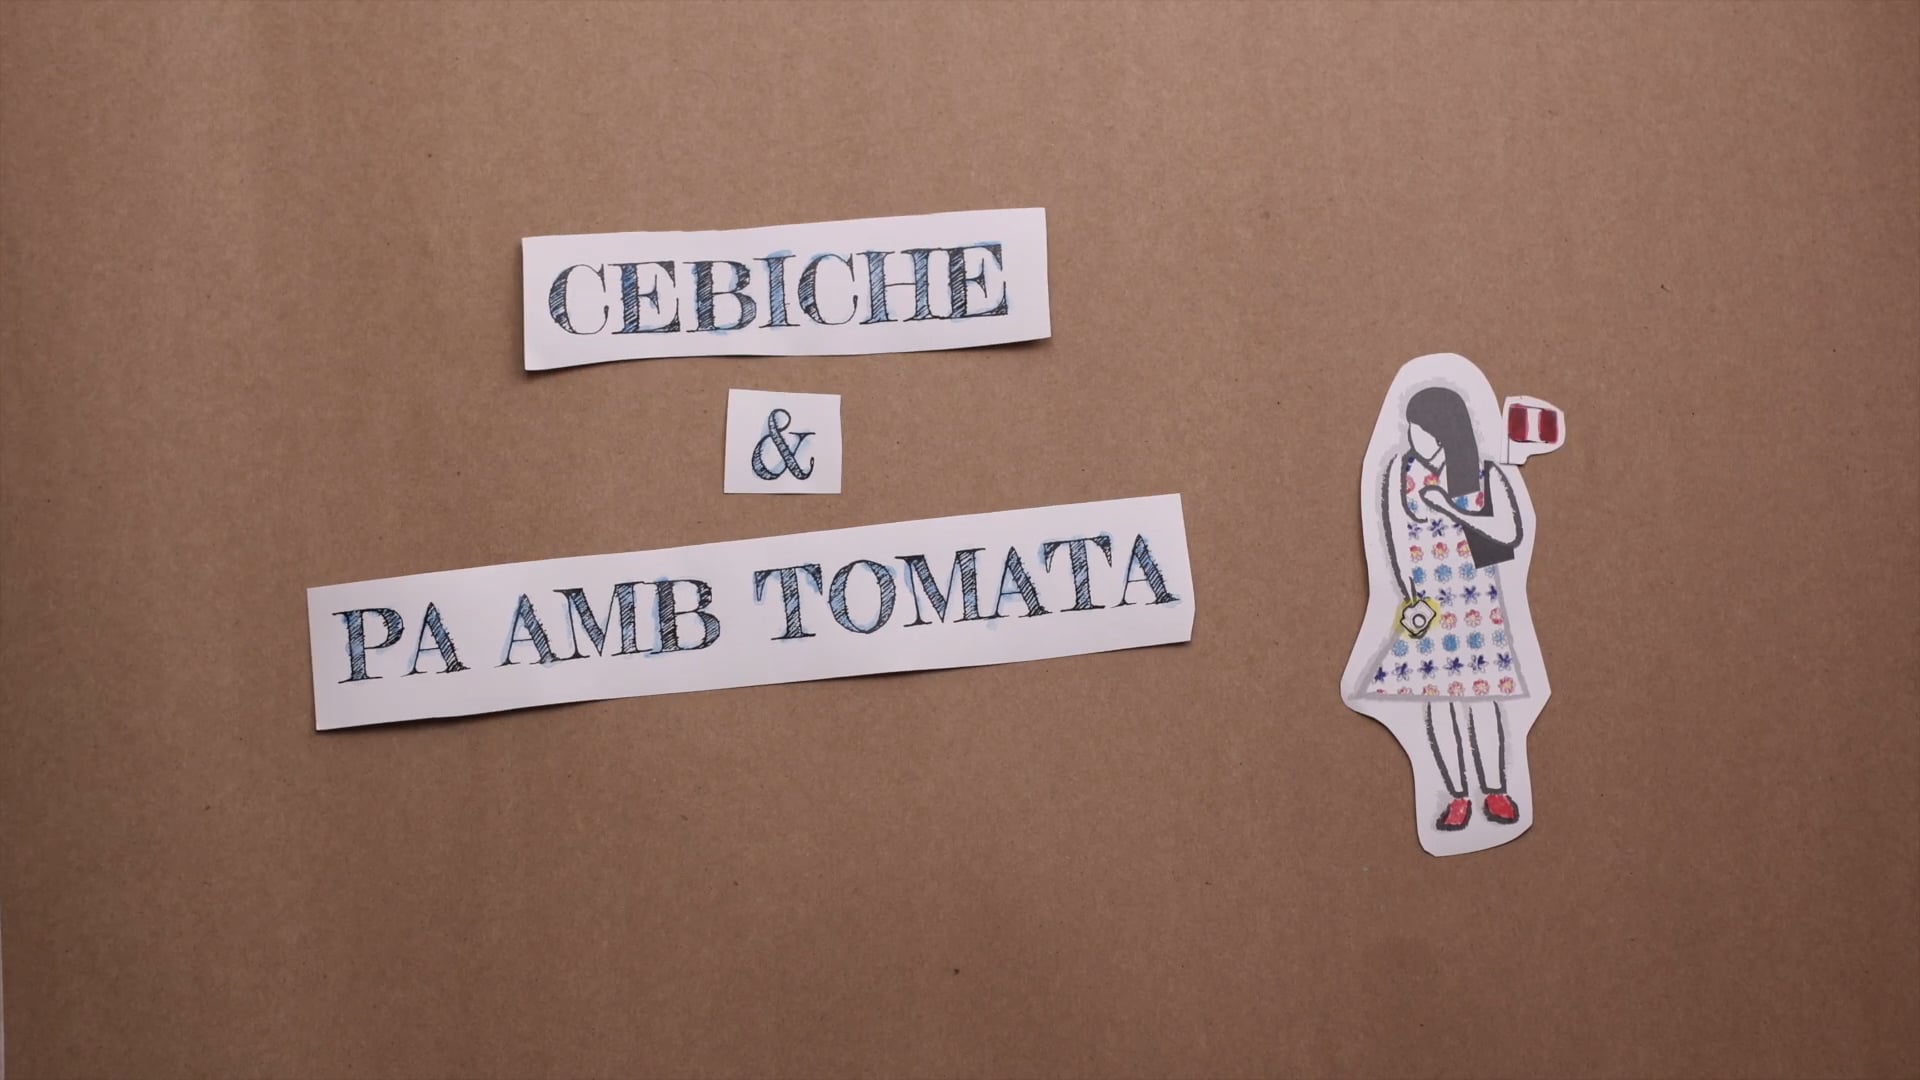 SHORT FILM - Cebiche & Pa amb tomata (MONTAJE) 2015